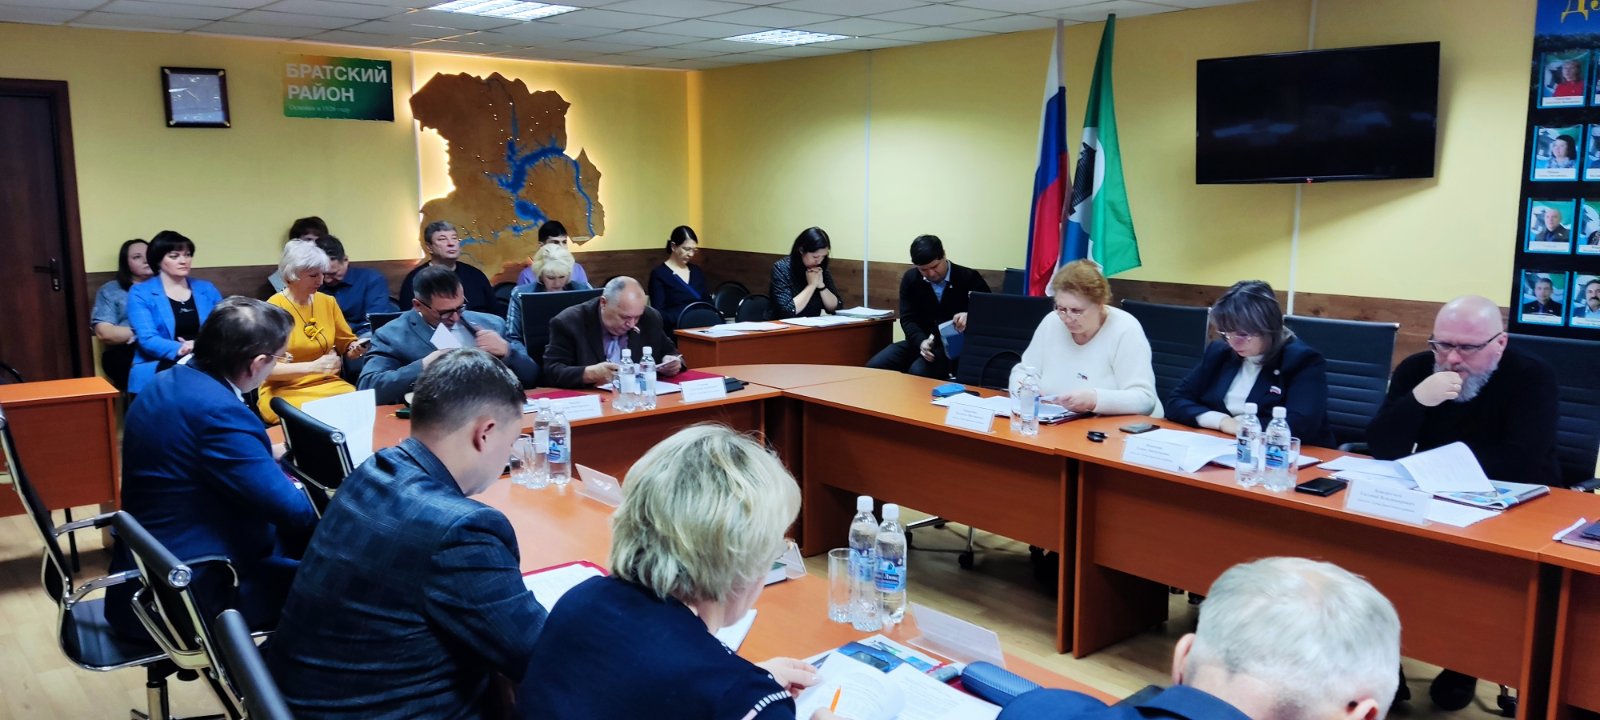 19 декабря состоялось внеочередное заседание Думы Братского района